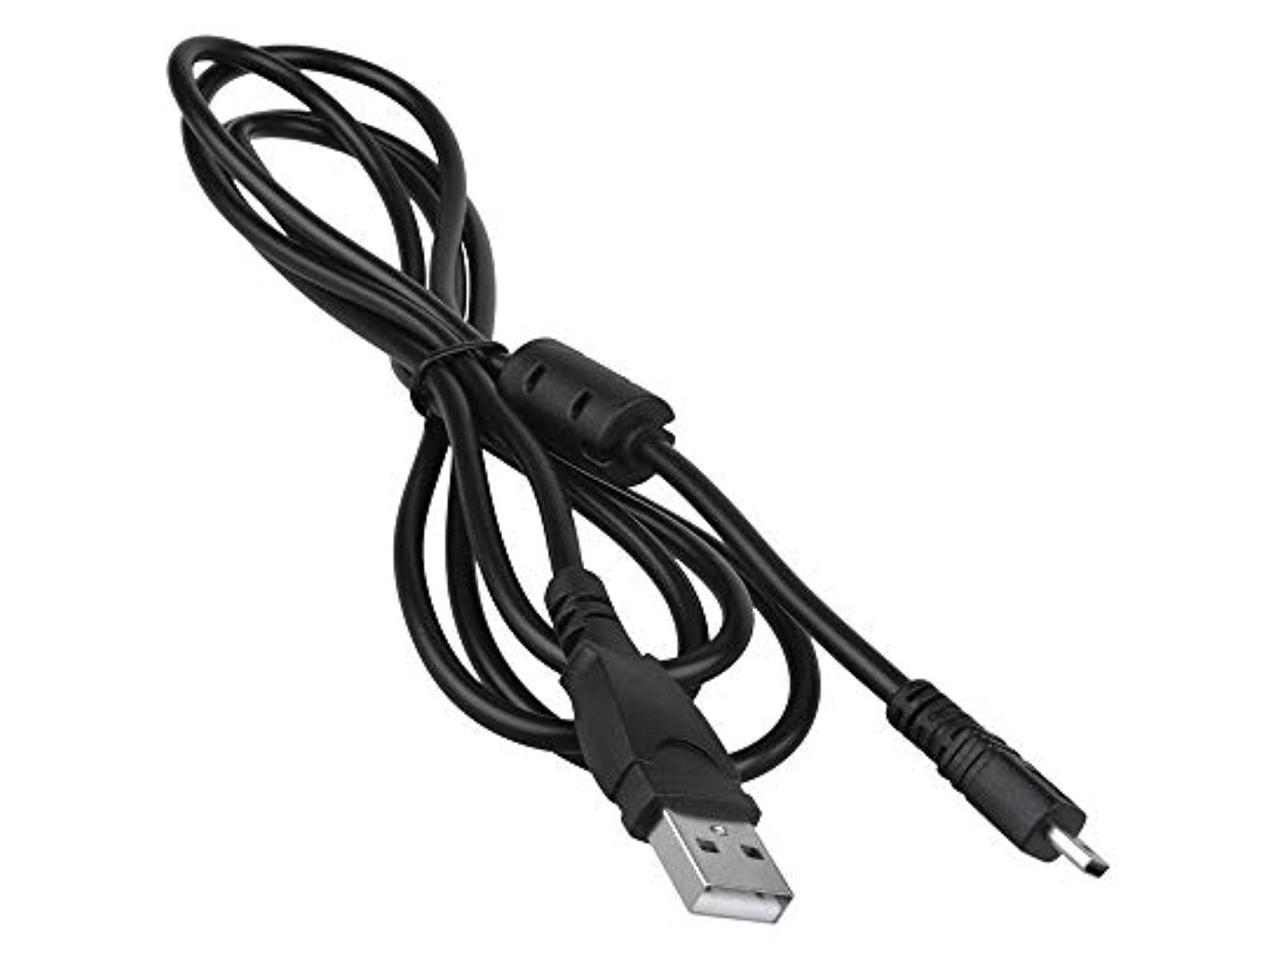 DSC-W830 DSC-F828 TF1-DSC-W810 W710 DSC-F828 W800 dsc-w730 Gigabyte Fox® Chargeur et câble de chargement câble de données câble USB pour Sony Cyber-shot DSC-H400 